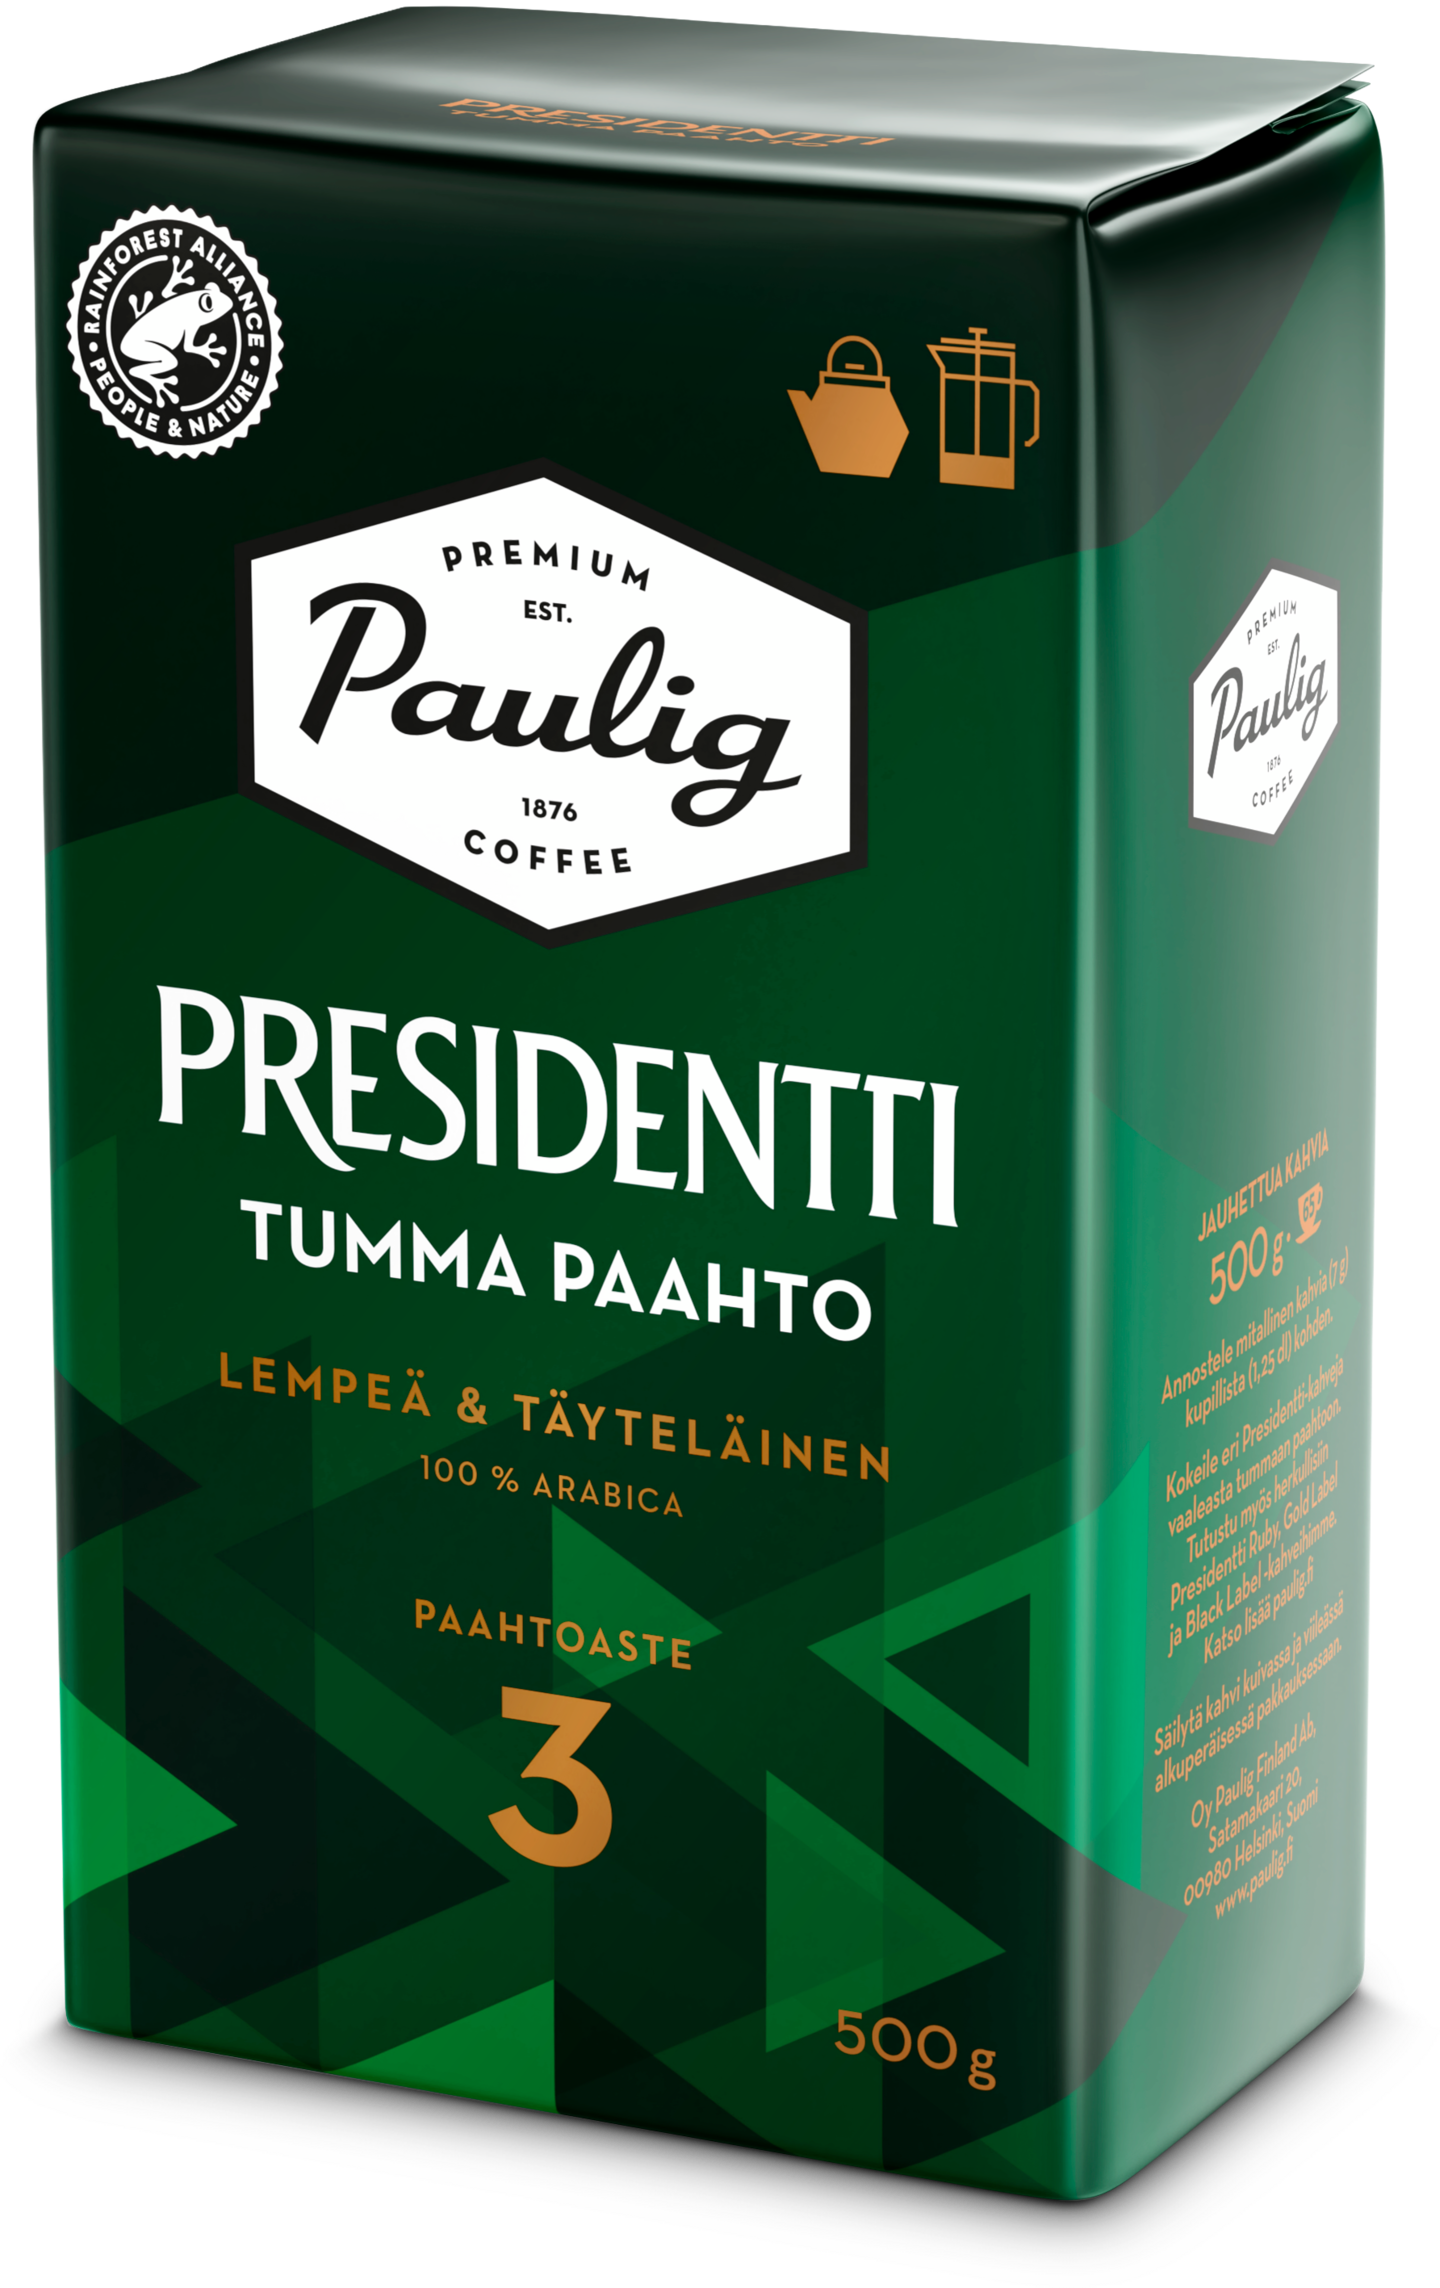 Presidentti Tumma Paahto kahvi 500g pannujauhatus